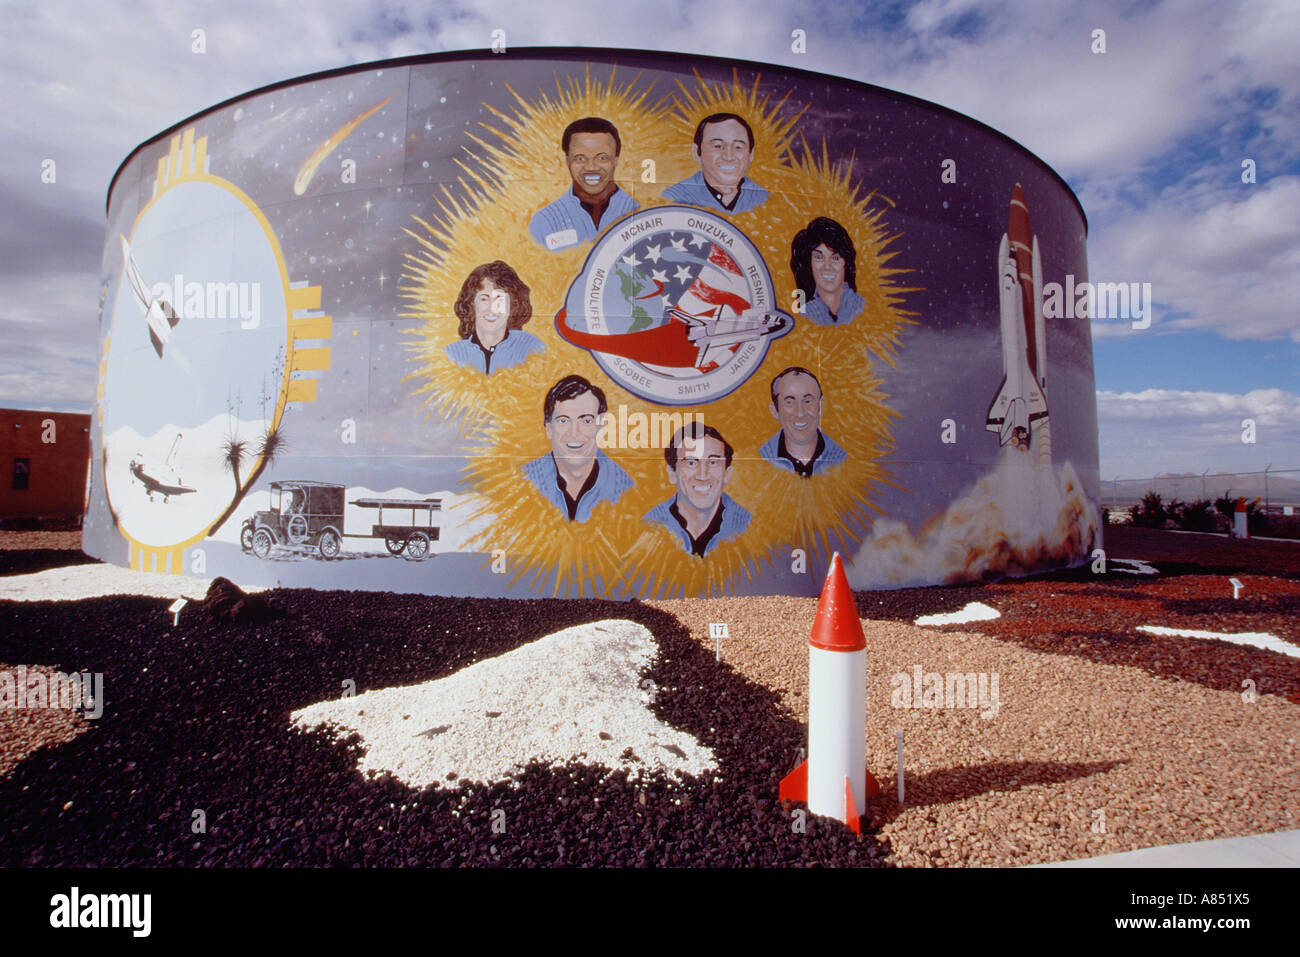 États-unis d'Amérique. Le Nouveau Mexique. L'orgue. Réservoir d'eau des peintures murales. Mémorial pour les astronautes de la NASA Navette spatiale Challenger. Banque D'Images